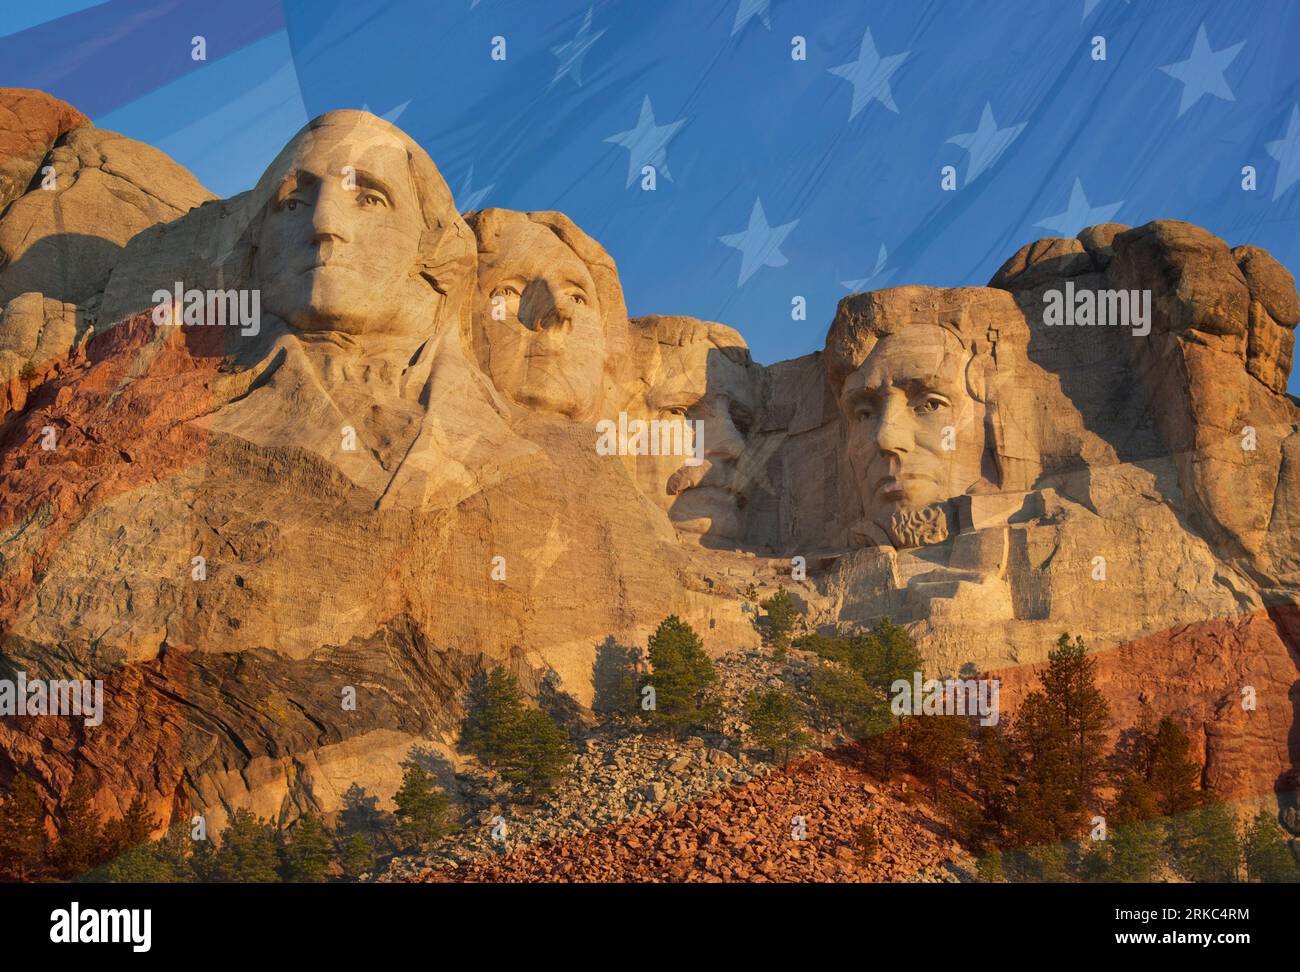 Mémorial national du Mont Rushmore, à l'aube, avec drapeau américain superposé. Black Hills, Dakota du Sud Banque D'Images